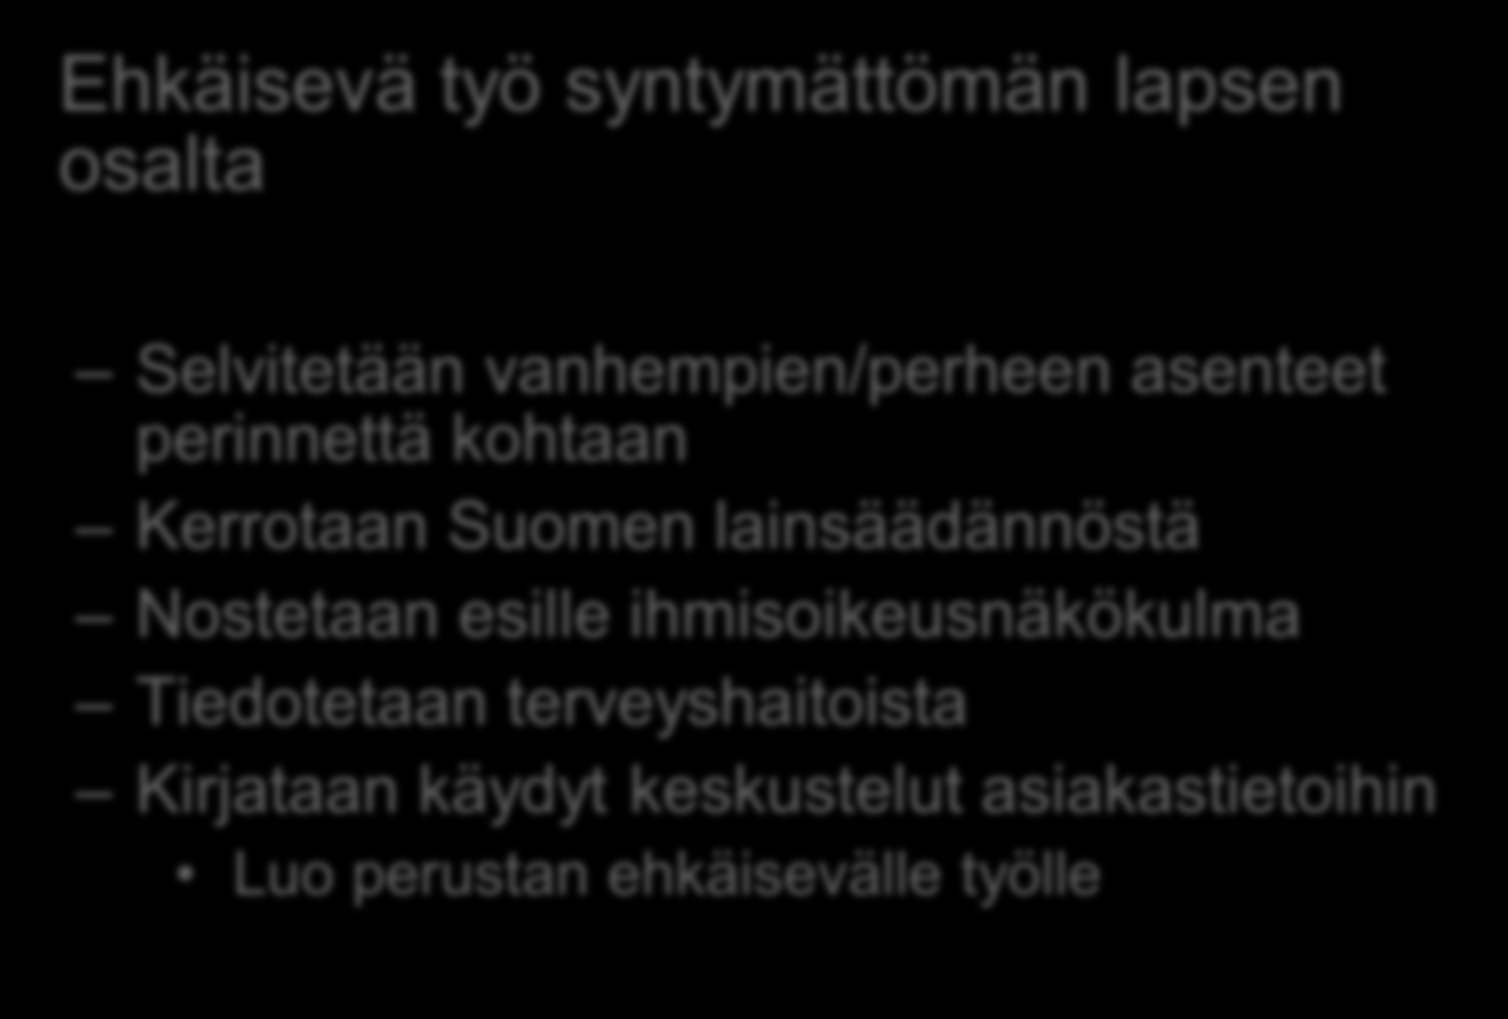 Äitiysneuvola (3) Ehkäisevä työ syntymättömän lapsen osalta Selvitetään vanhempien/perheen asenteet perinnettä kohtaan Kerrotaan Suomen